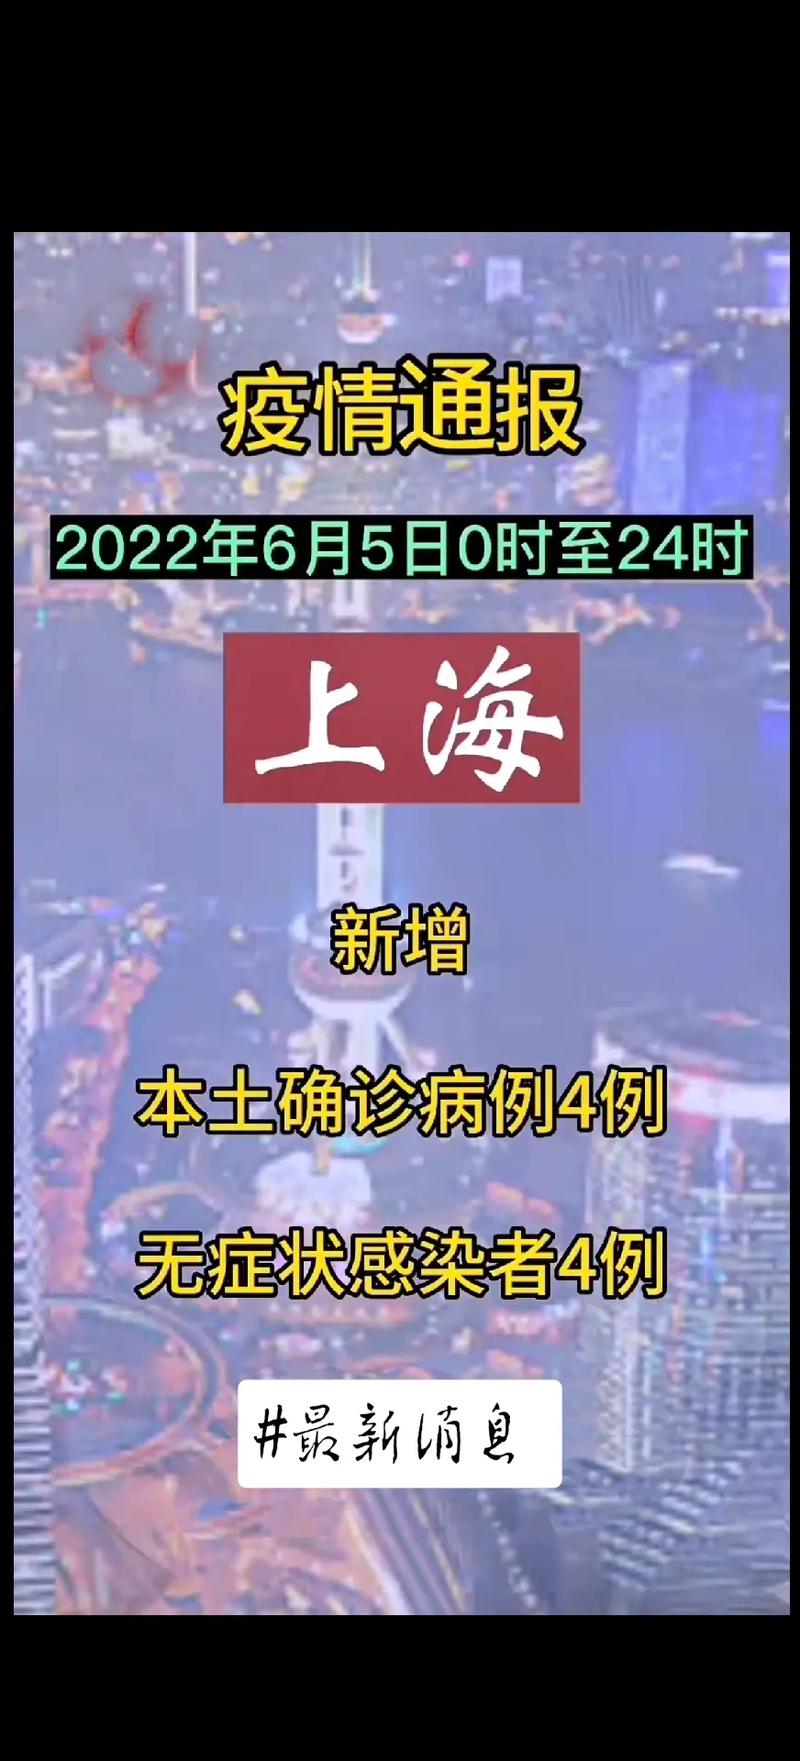 上海疫情 #抖音 #热点 #上海6月起全面恢复正常生产生活 - 抖音